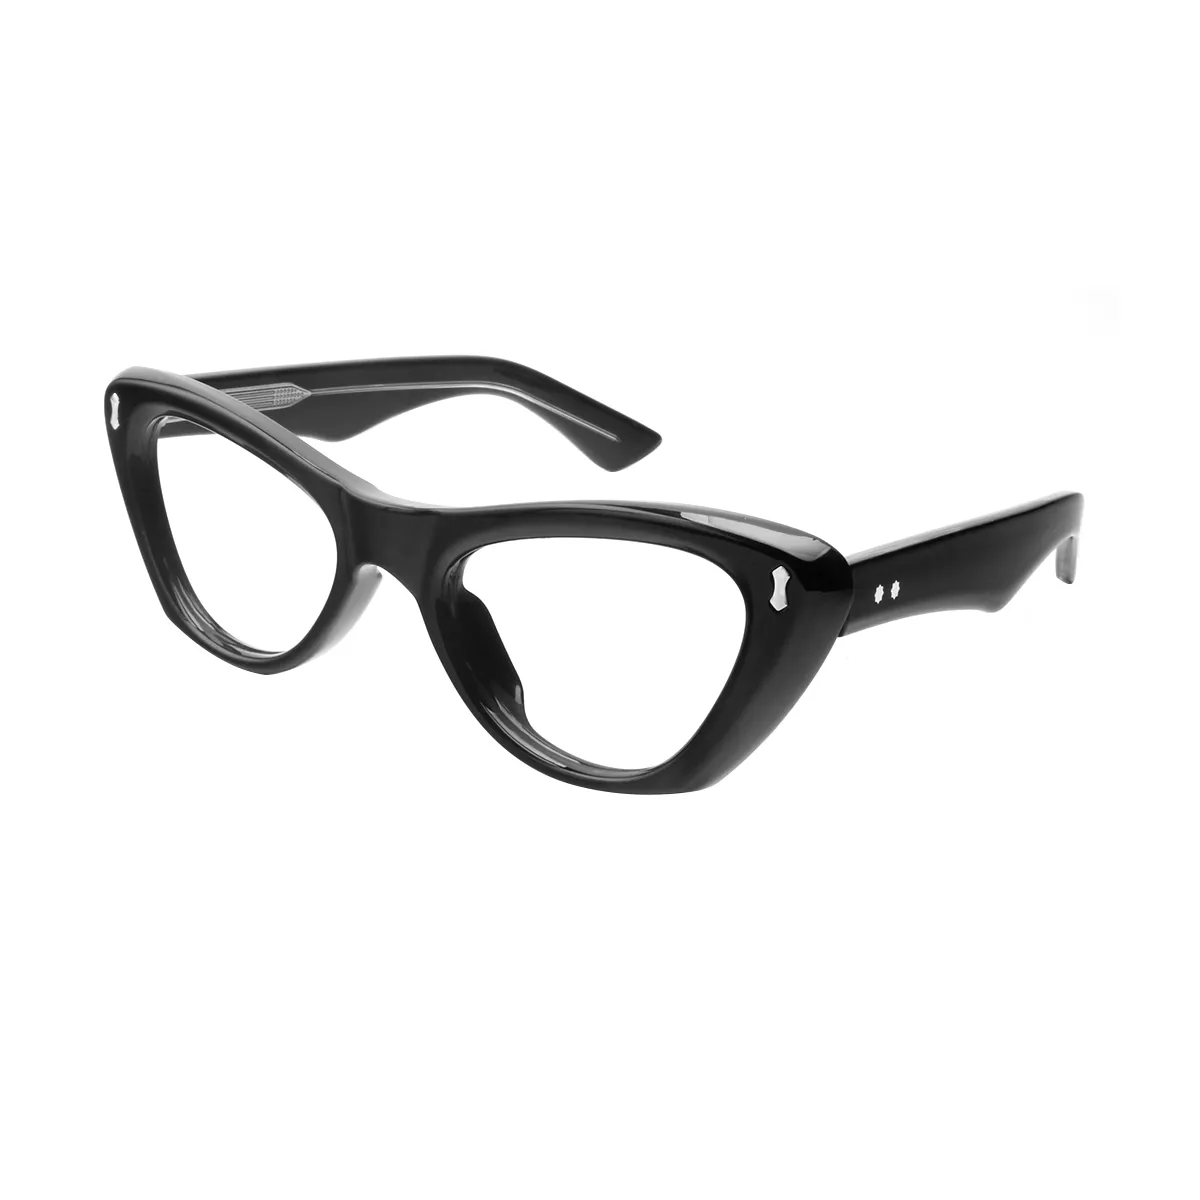 Leigh - Cat-eye Black Glasses for Women